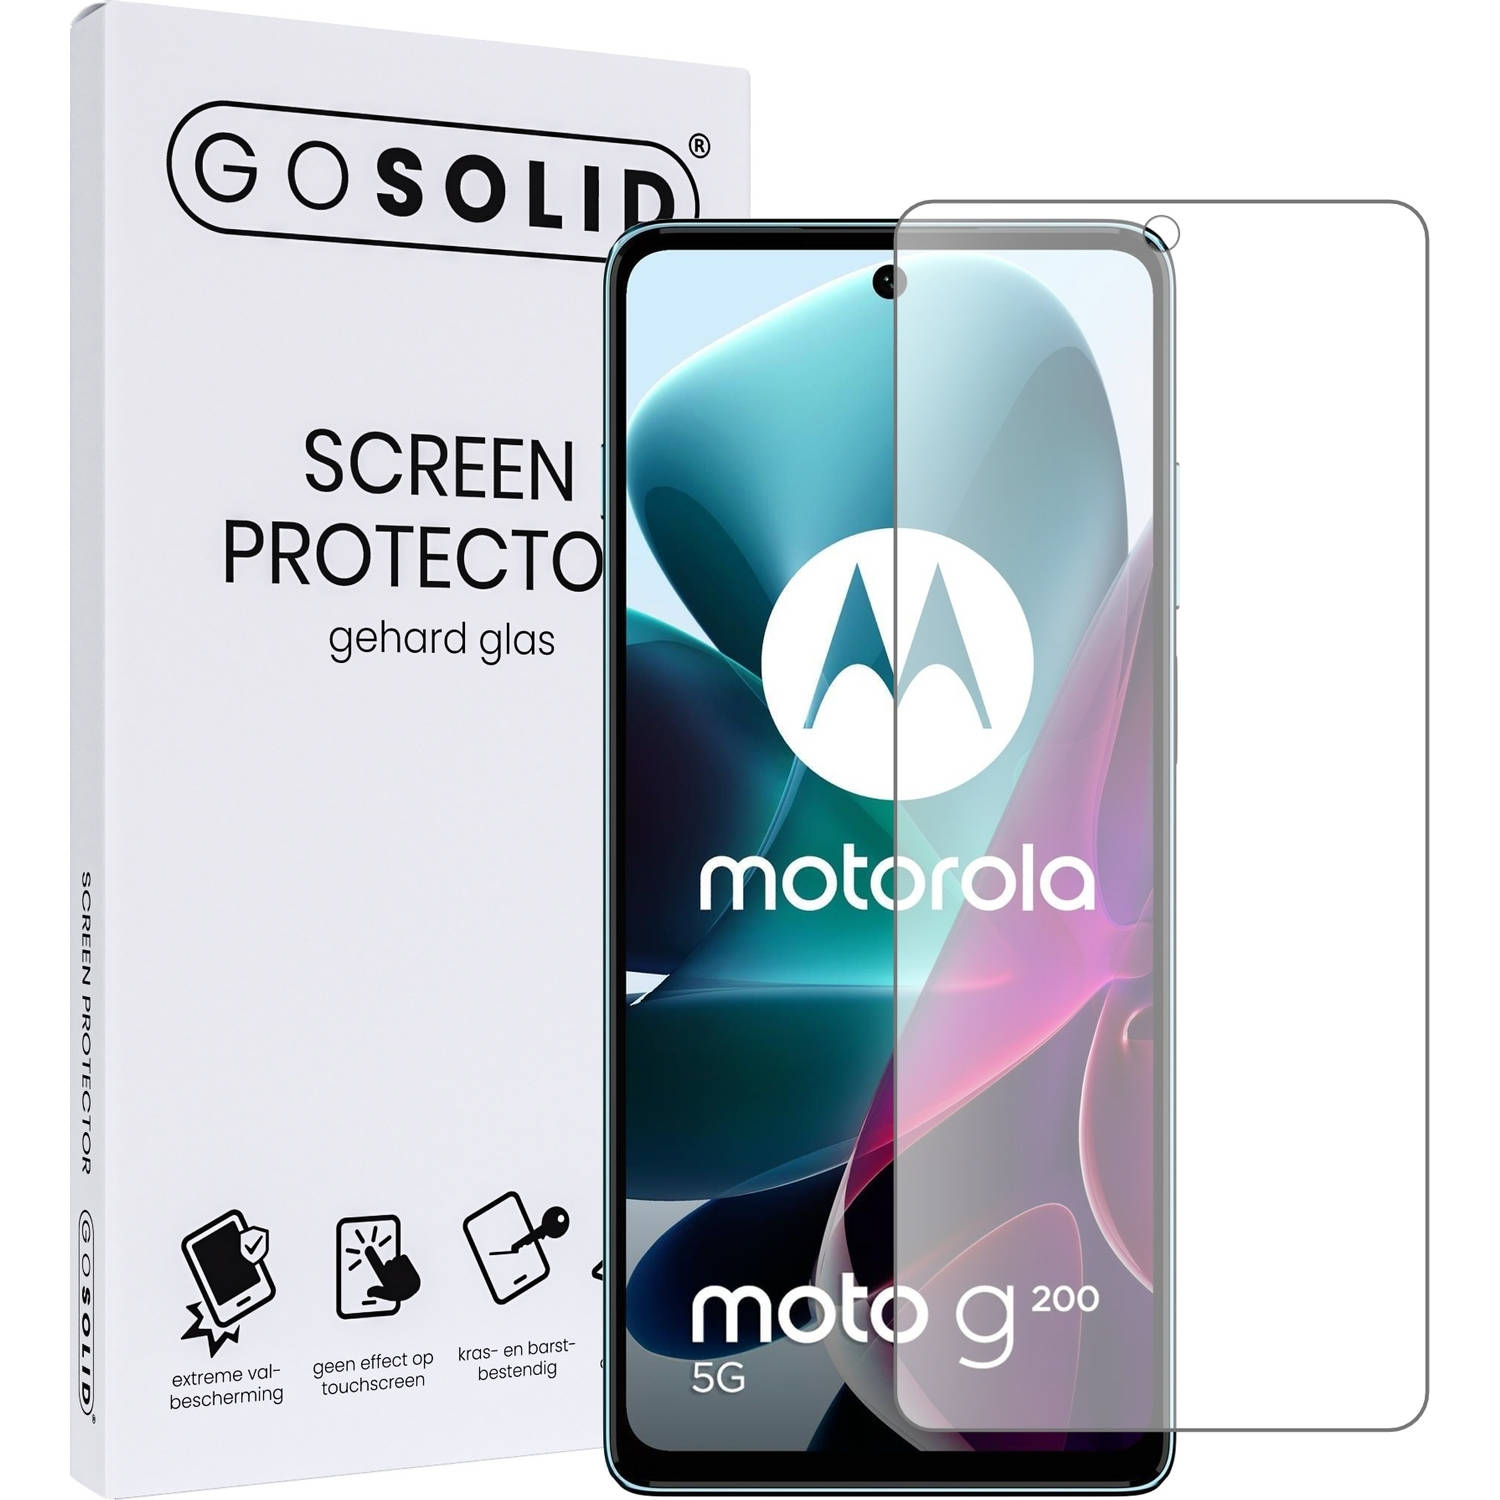 GO SOLID! Screenprotector voor Motorola Moto G200 gehard glas